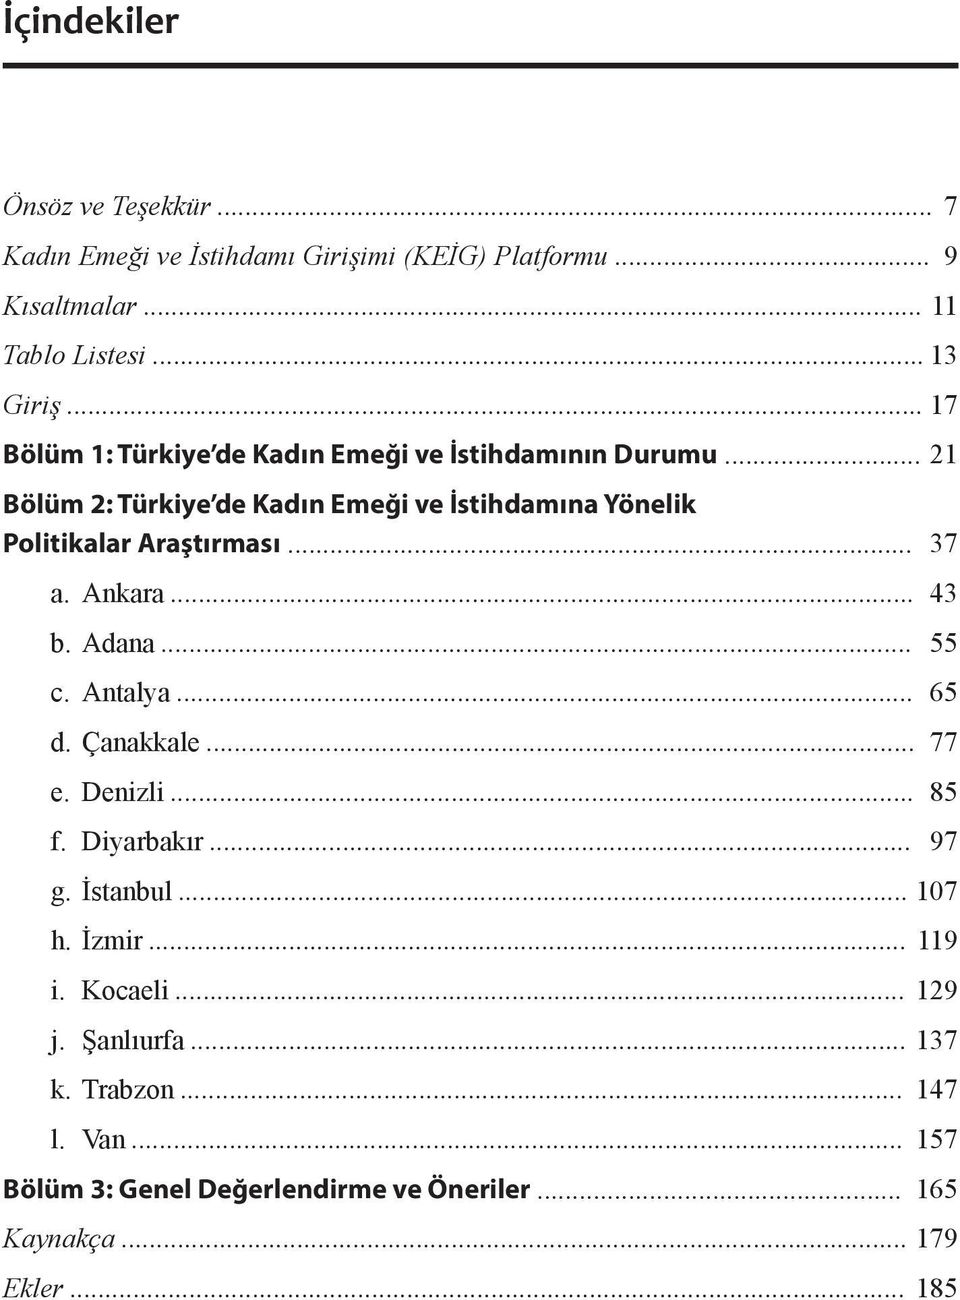 .. 21 Bölüm 2: Türkiye de Kadın Emeği ve İstihdamına Yönelik Politikalar Araştırması... 37 a. Ankara... 43 b. Adana... 55 c. Antalya... 65 d.